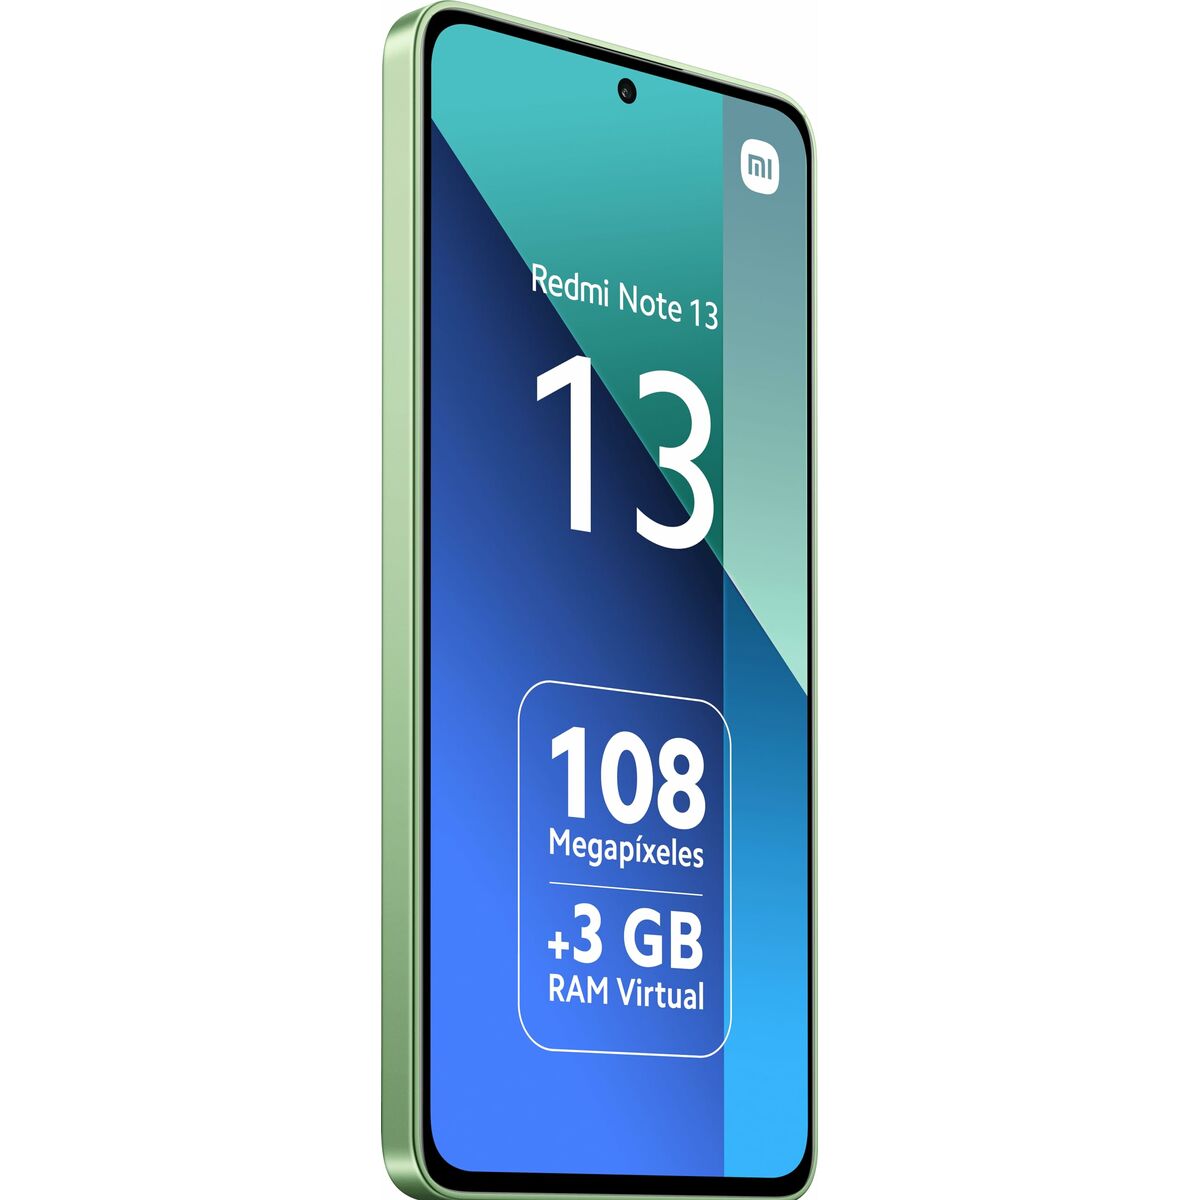 Smartphone Xiaomi REDMI NOTE 13 6,67" Snapdragon 685 6 GB RAM 128 GB grün Minze mint green - CA International  